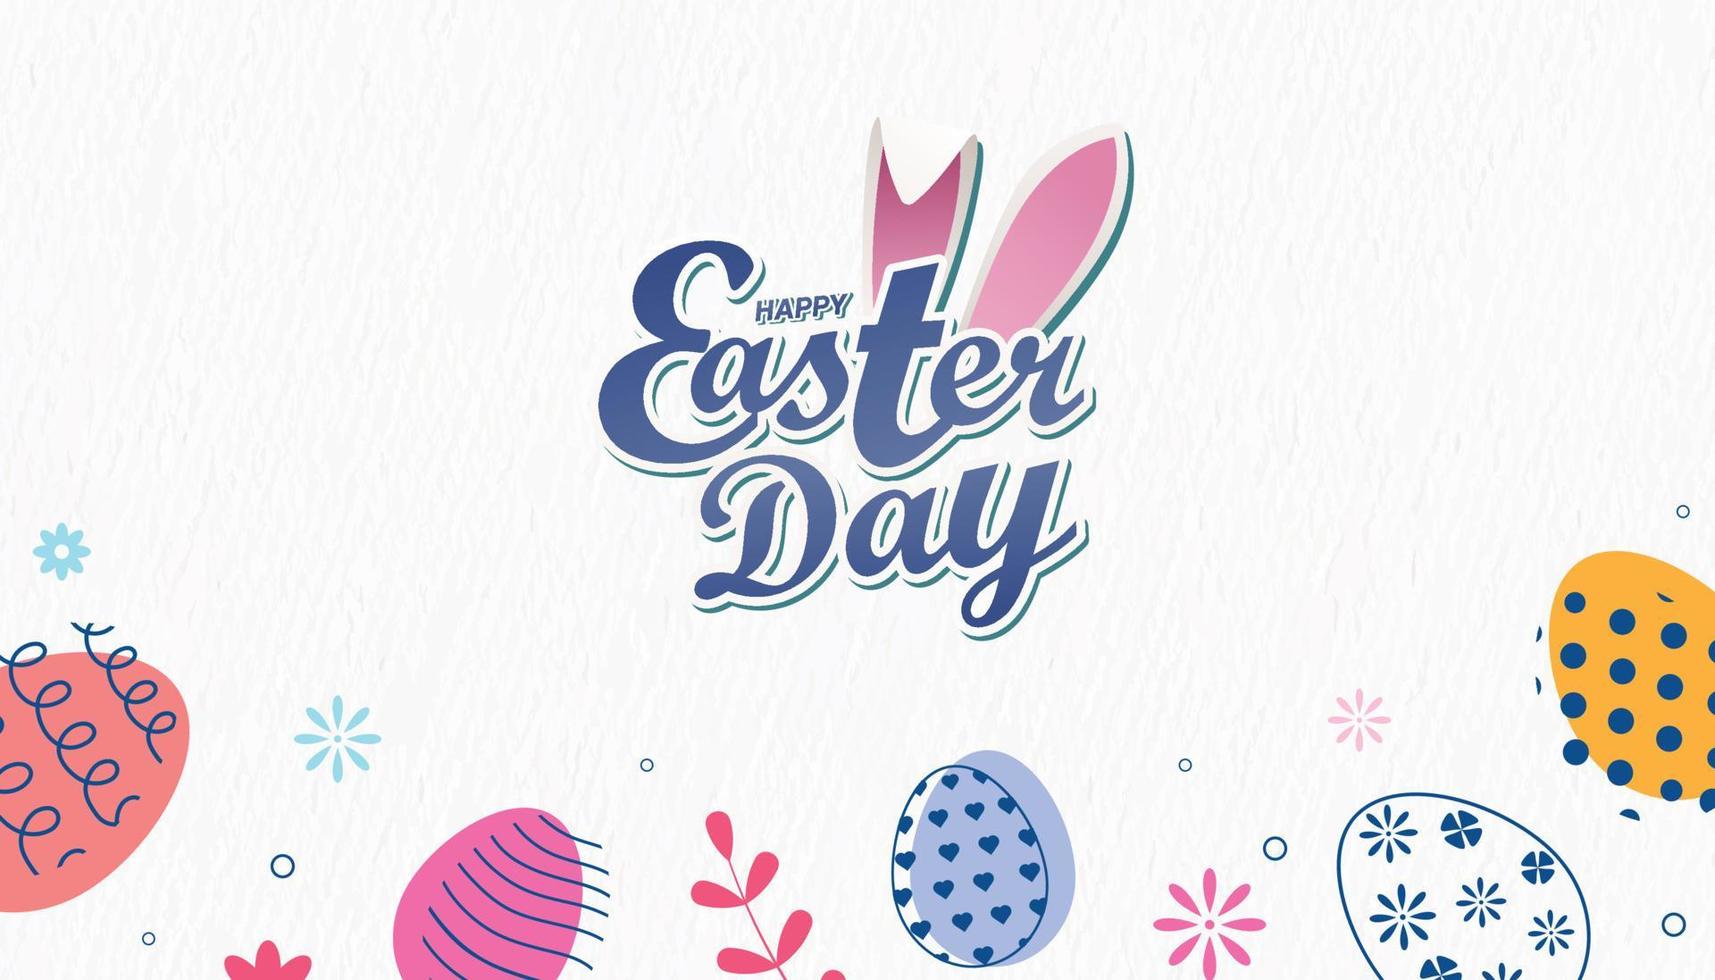 Ostern Tag Poster Banner mit glücklich Ostern Tag Typografie Logo Gedächtnisstütze und dekoriert Ostern Ei Clip Art vektor